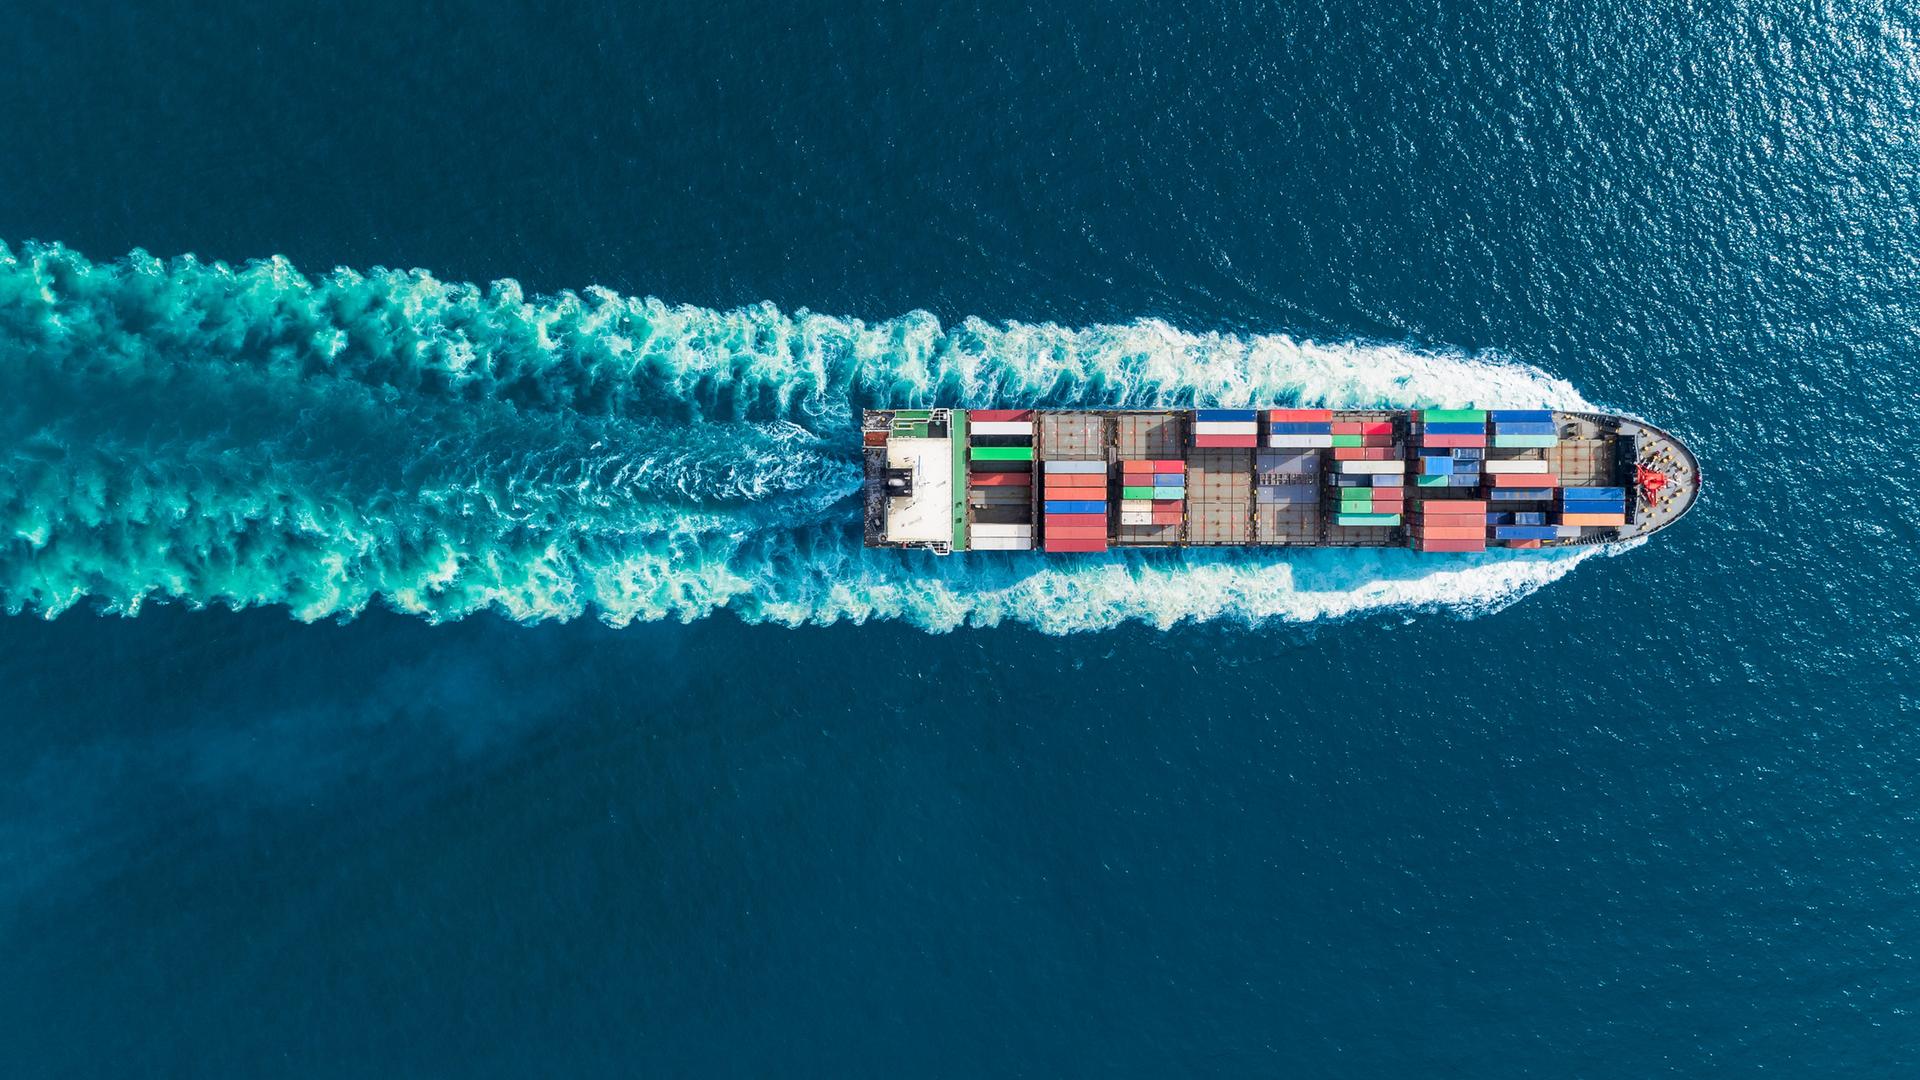 Aerialaufsicht von einem Containerschiff im Meer in voller Geschwindigkeit.